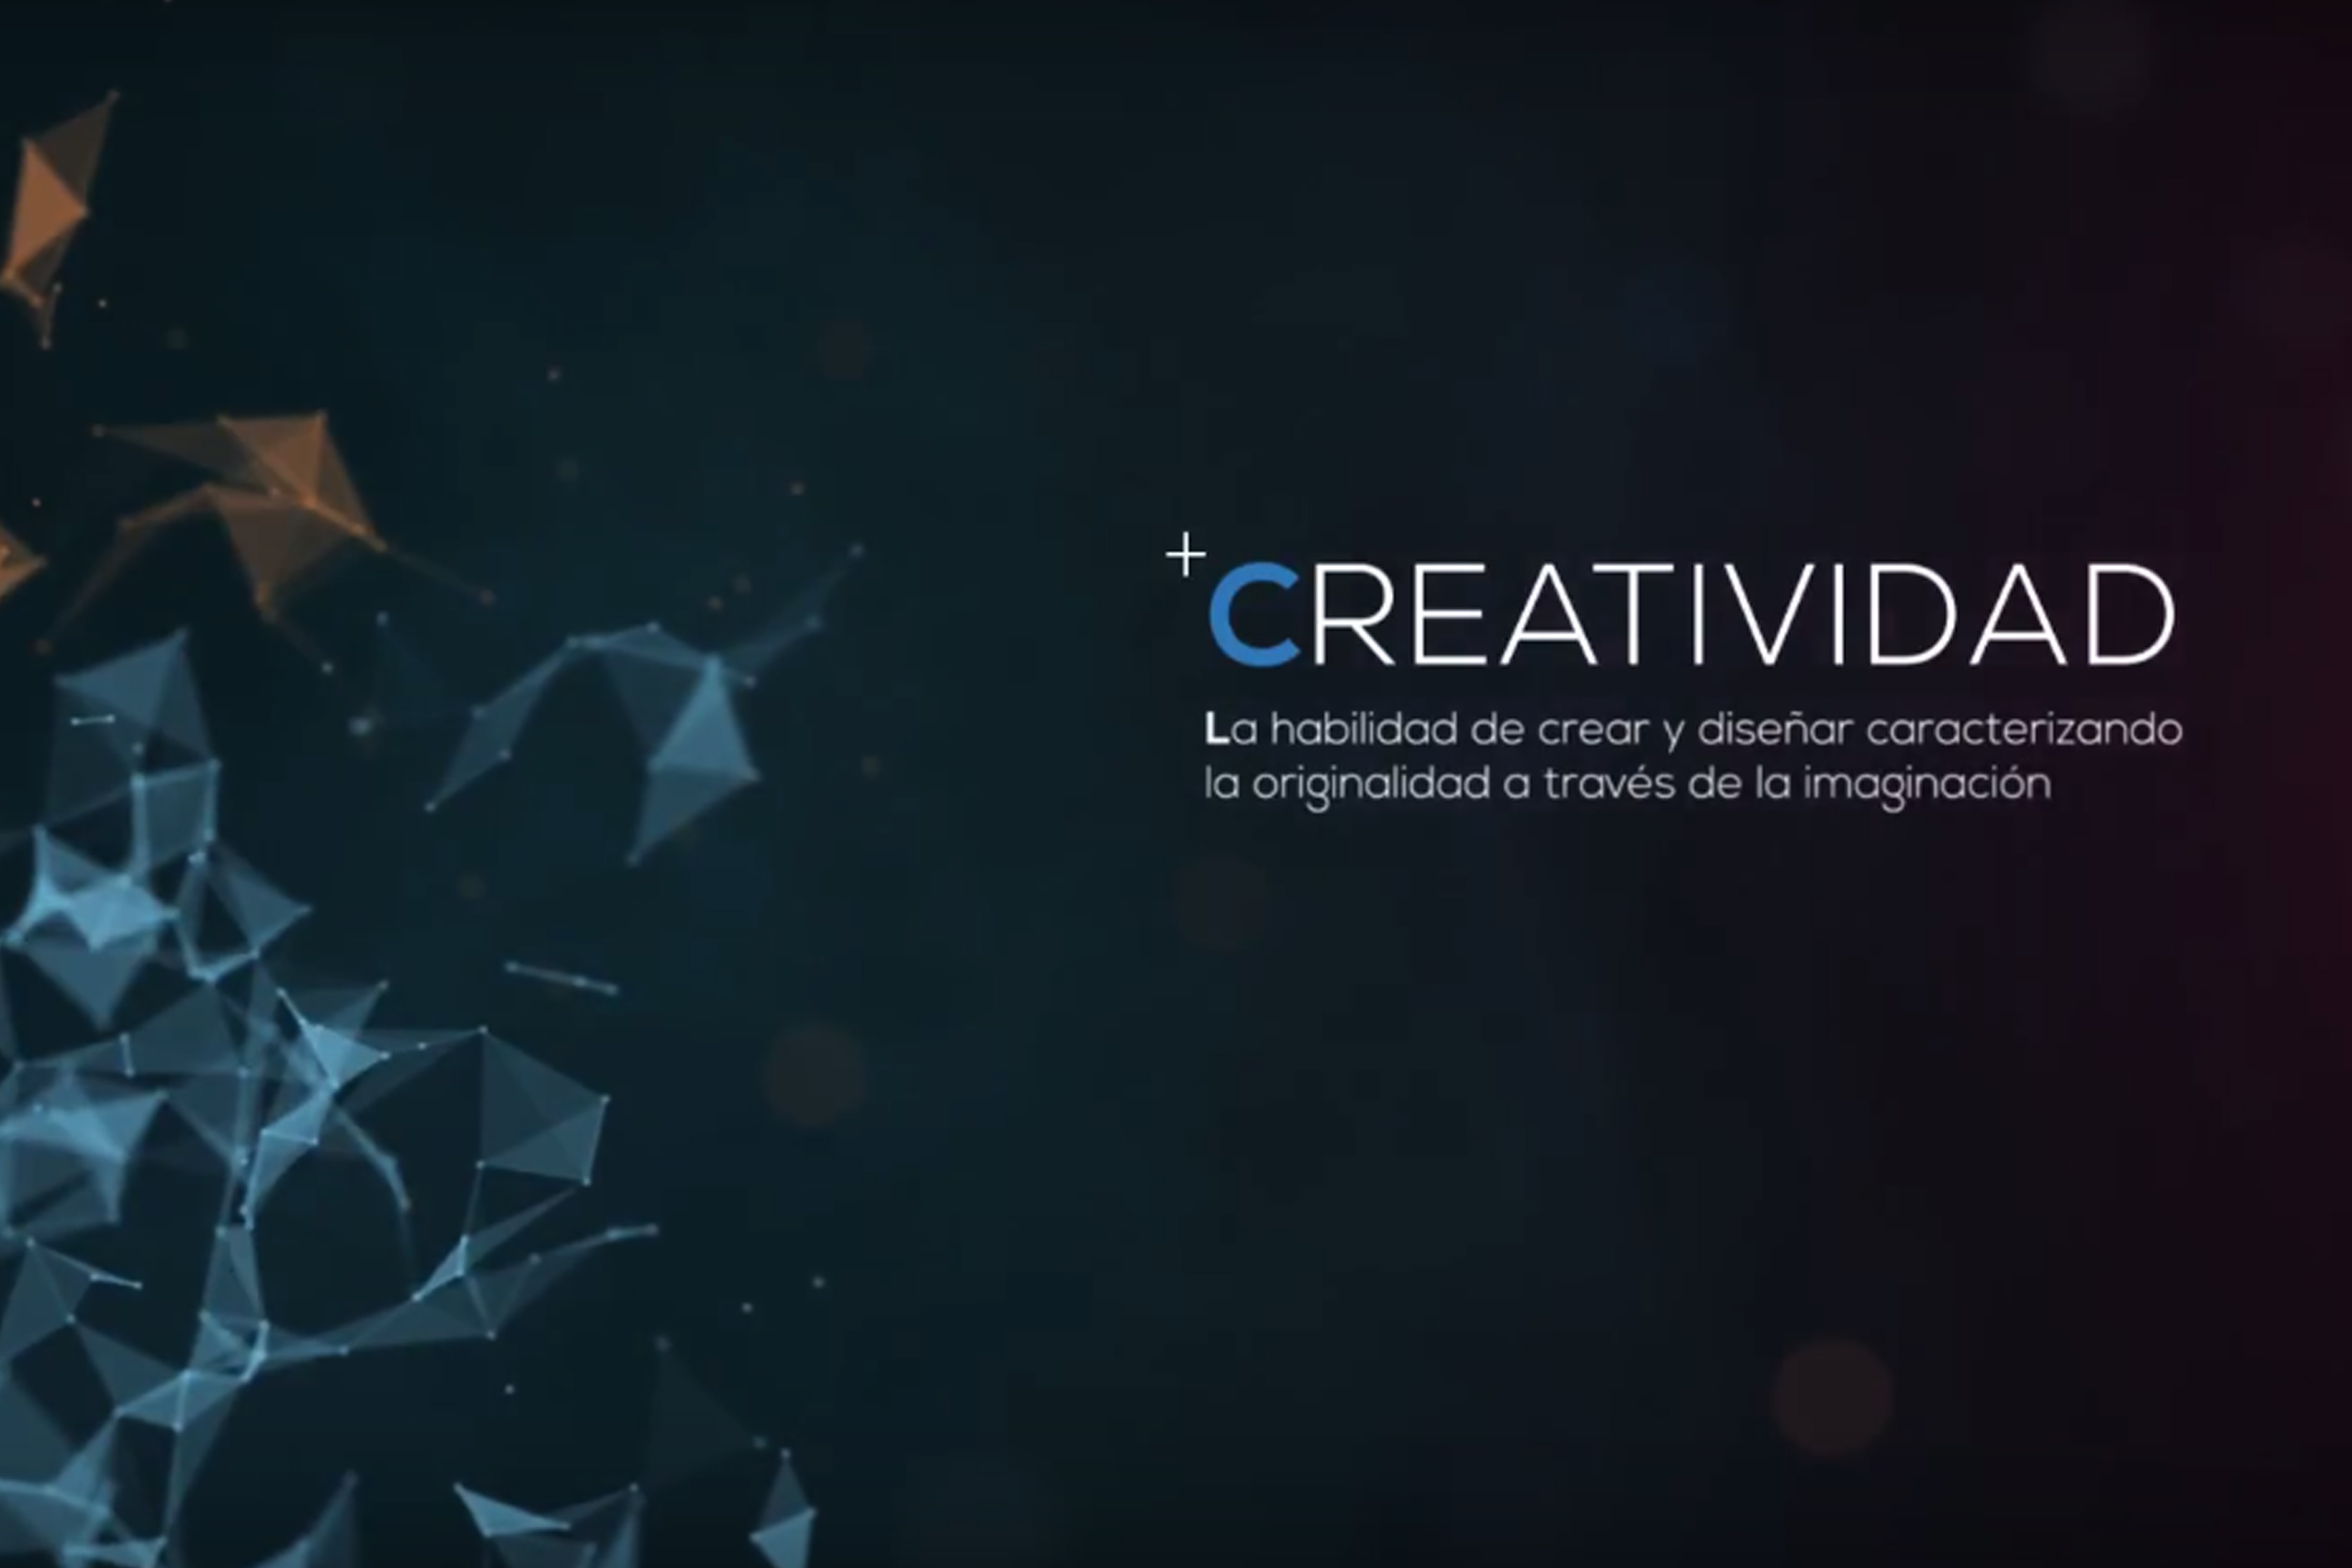 nuevo-video-q2b-creatividad-diseño-software-proyectos